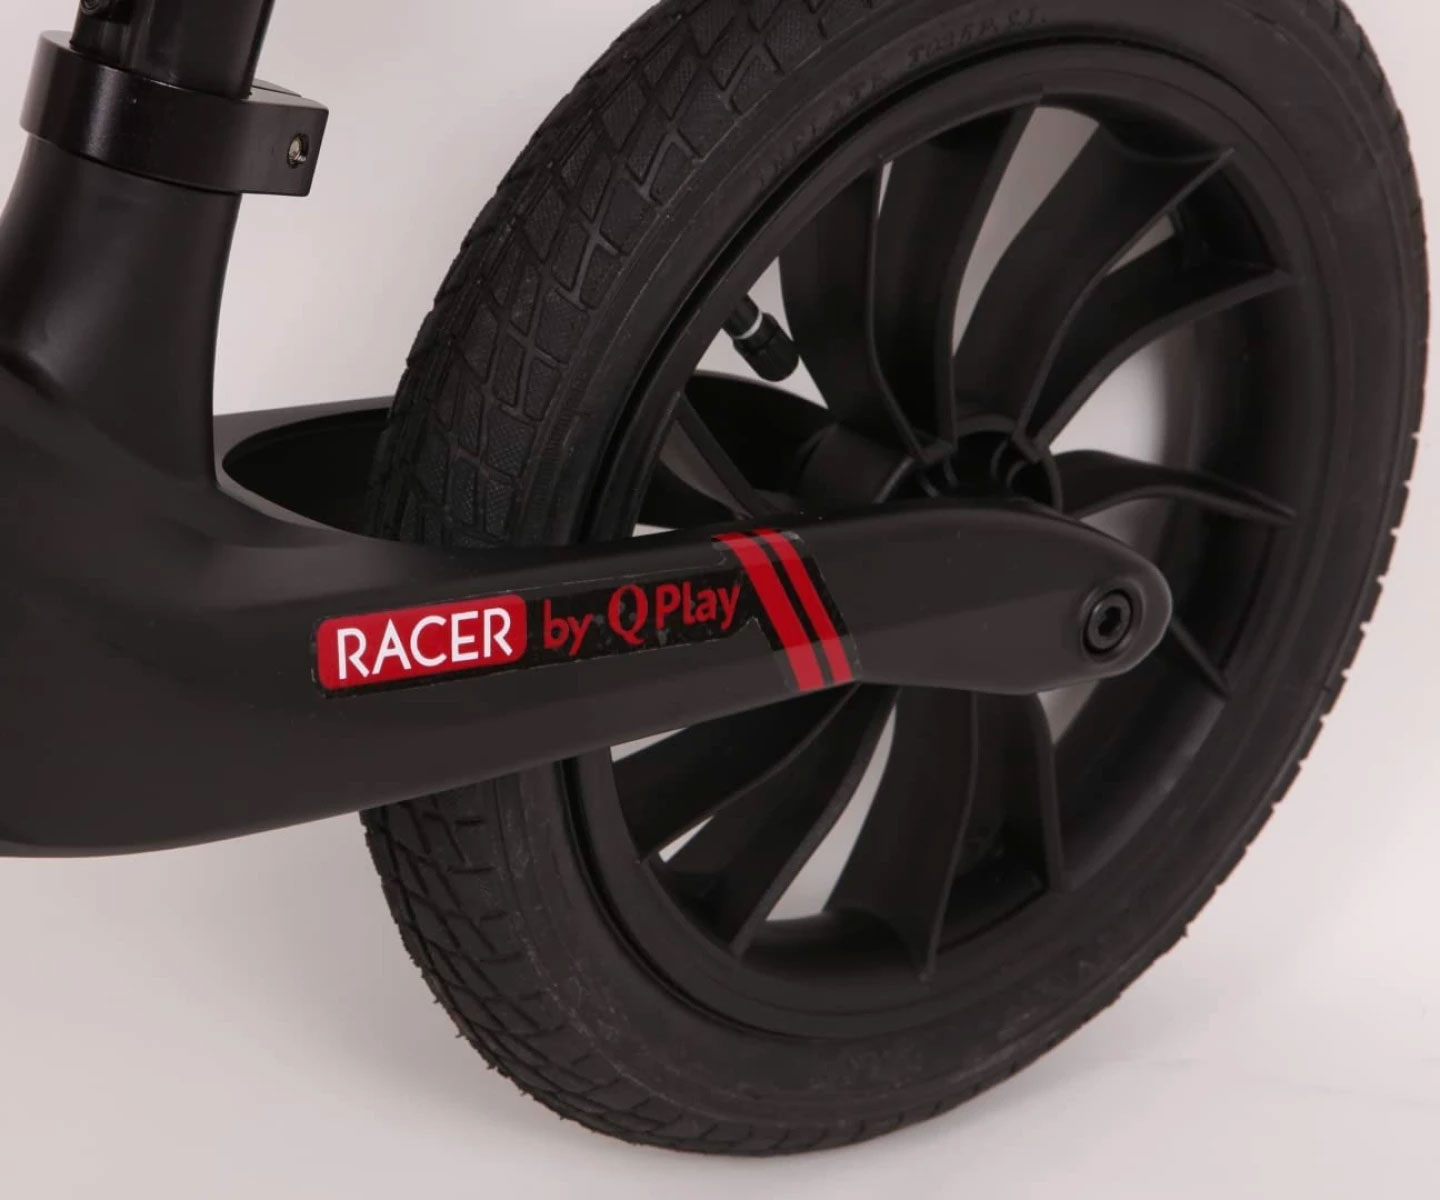 QPlay Racer Black